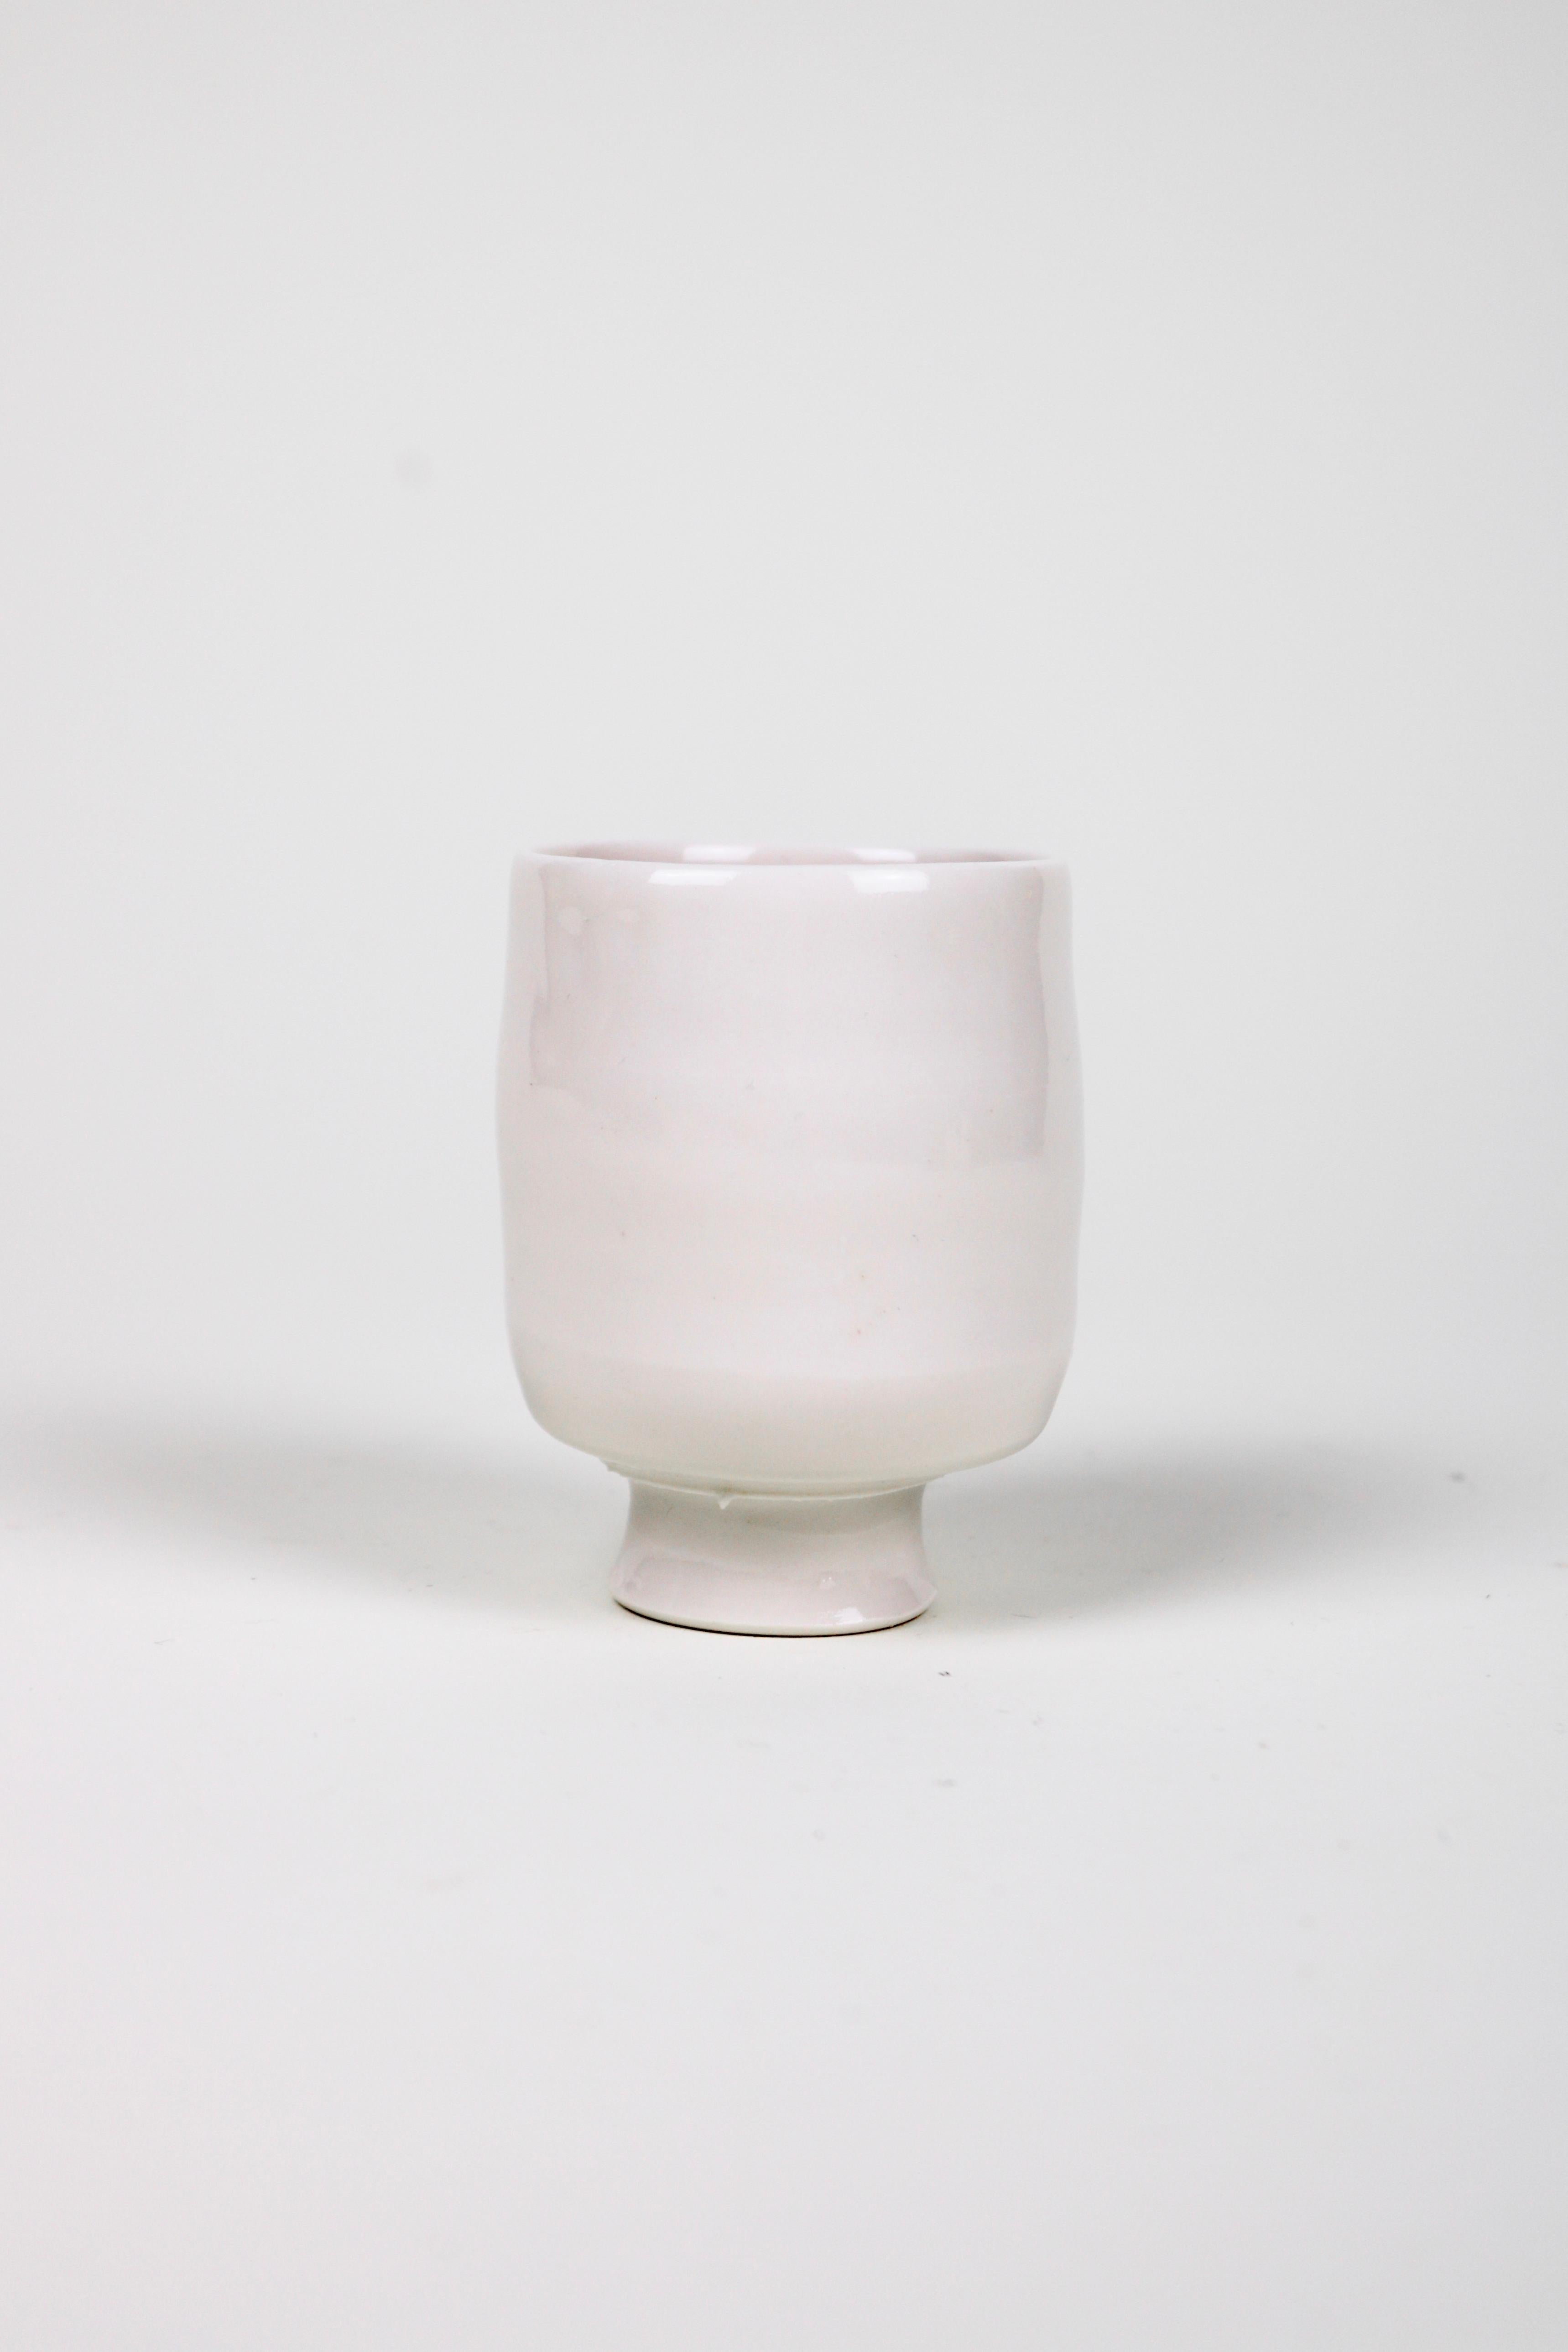 Ashley Howard Porcelain Cup Set For Sale 6